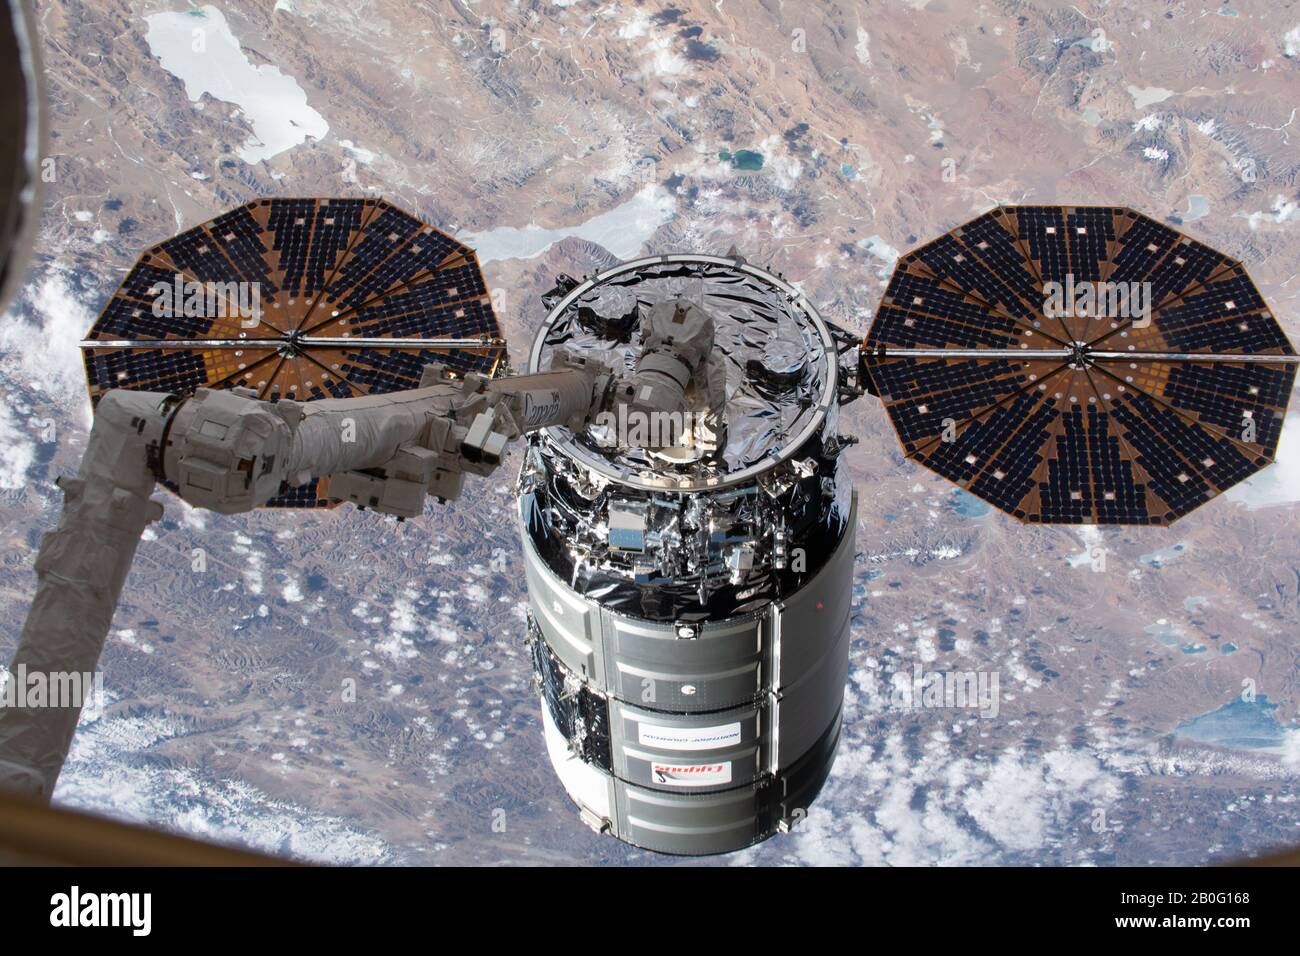 La nave espacial Northrop Grumman Cygnus con los distintos paneles solares en forma de platillo es grapada por el CanadaArm2 para atracar en la Estación Espacial Internacional el 18 de febrero de 2020 en Órbita terrestre. La nave de carga no tripulada está llevando más de 7,500 libras de suministros para la tripulación del laboratorio de orbitación. Foto de stock